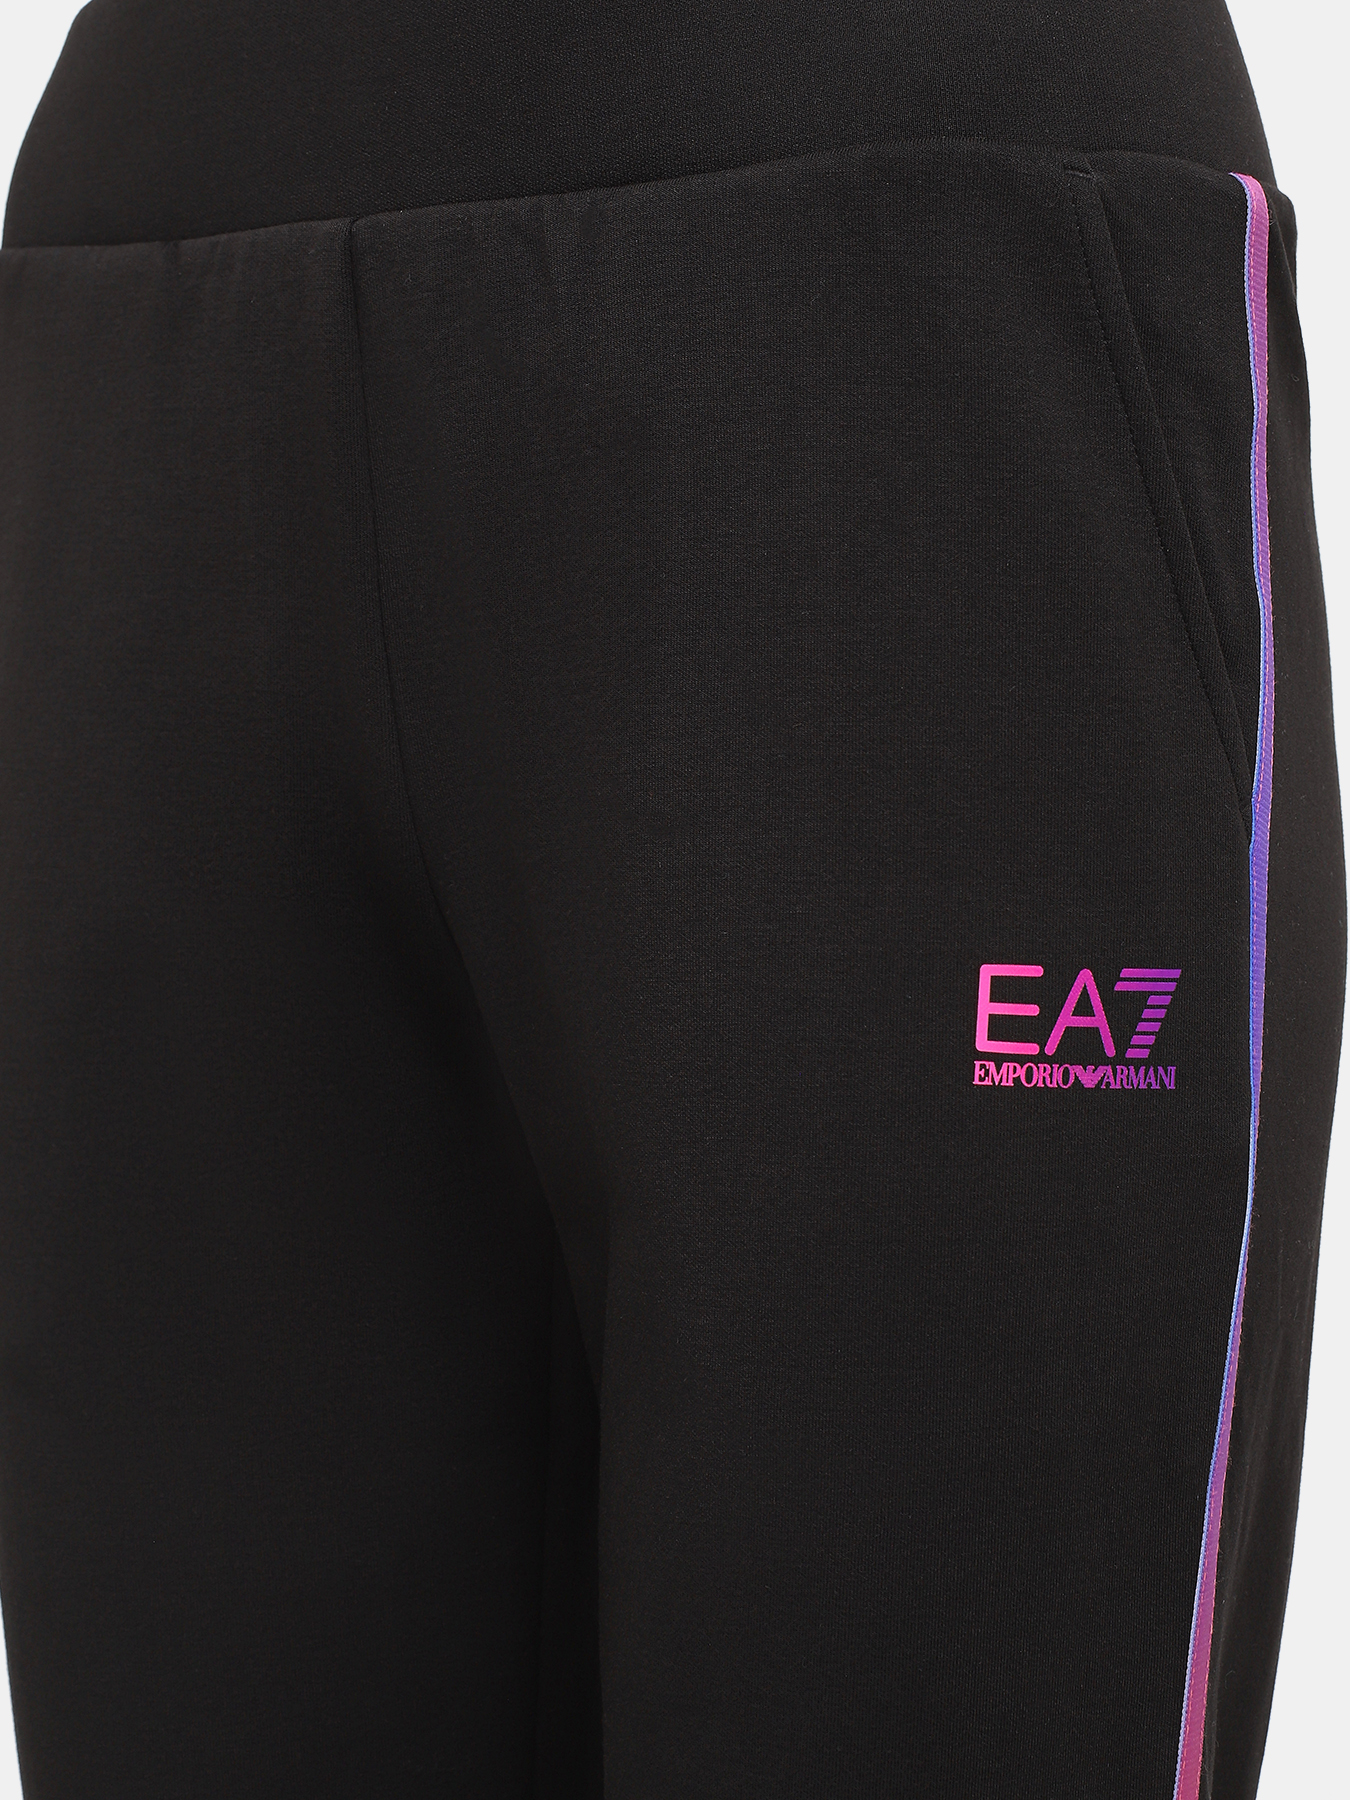 Спортивные брюки EA7 Emporio Armani 423025-044, цвет черный, размер 46-48 - фото 5